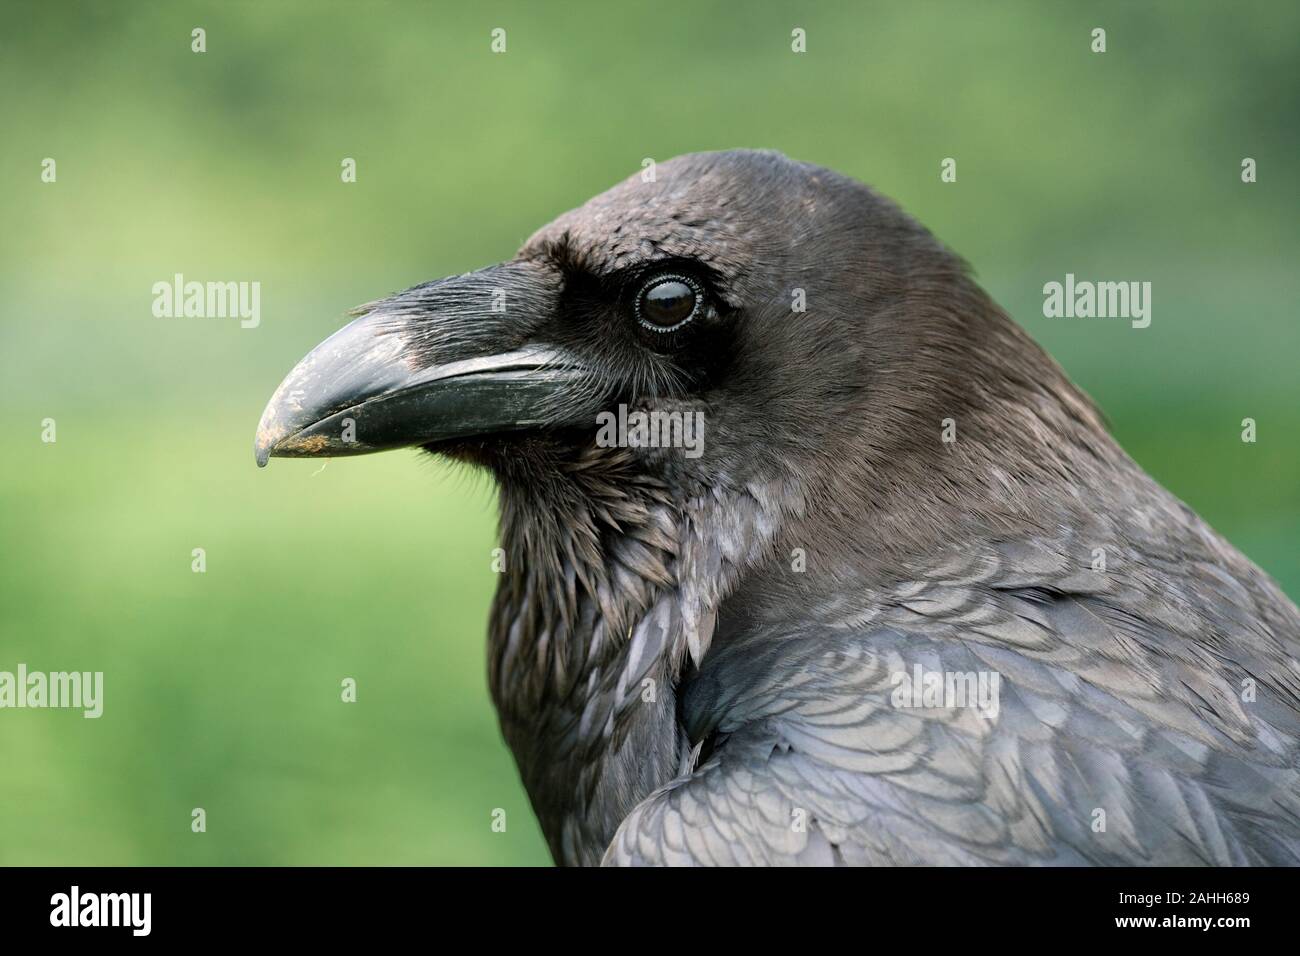 Corvo Imperiale (Corvus corax). Ritratto di testa, che mostra i dettagli del viso, grande bill o becco. Foto Stock